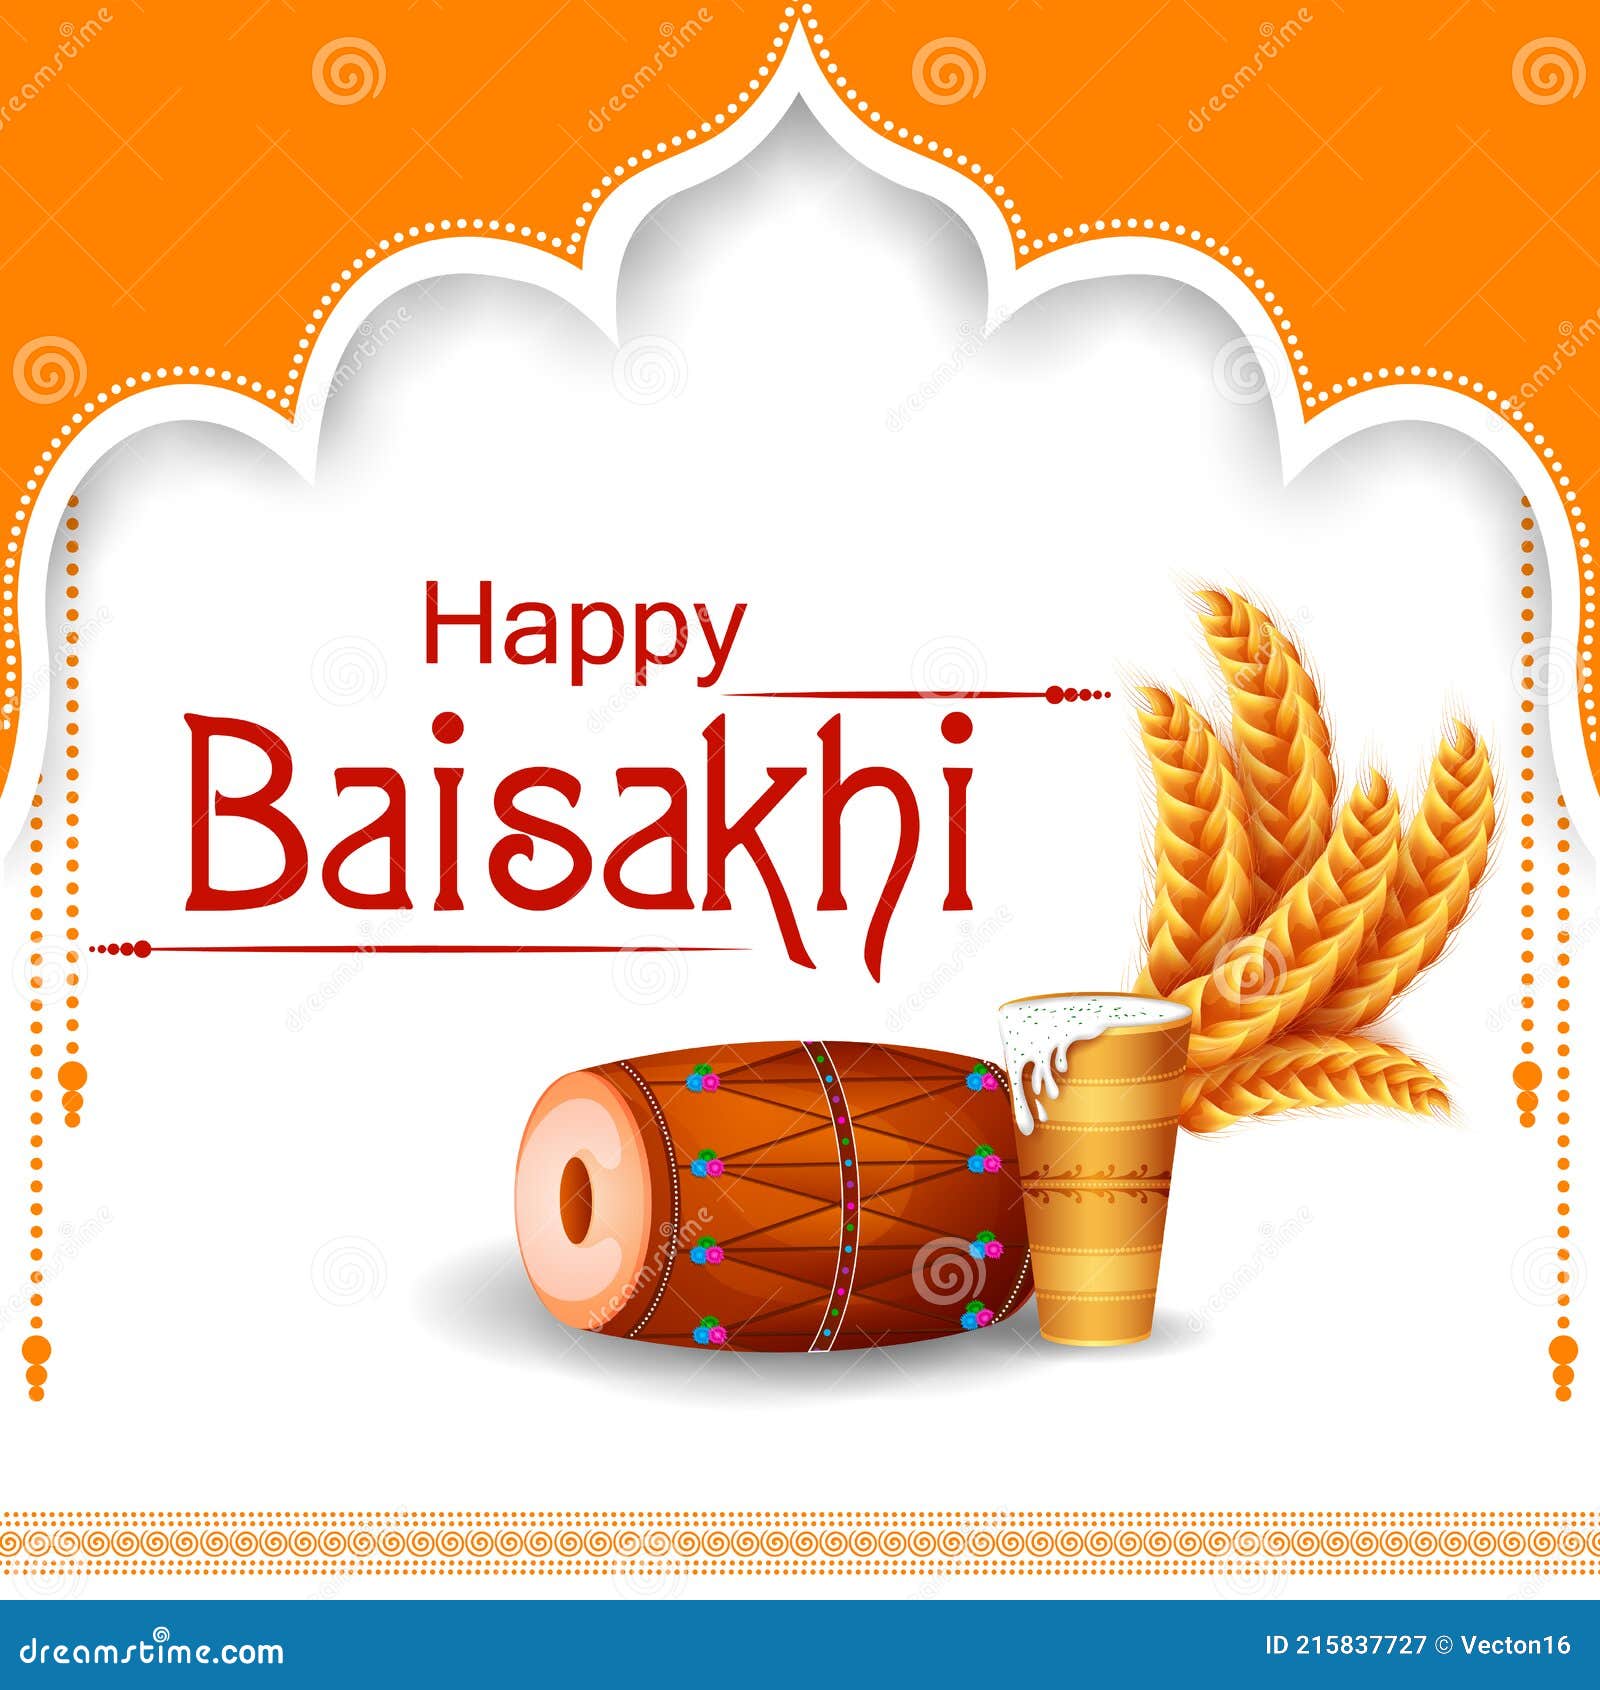 Punjabi New Year Greeting Background for Happy Baisakhi Celebrated in